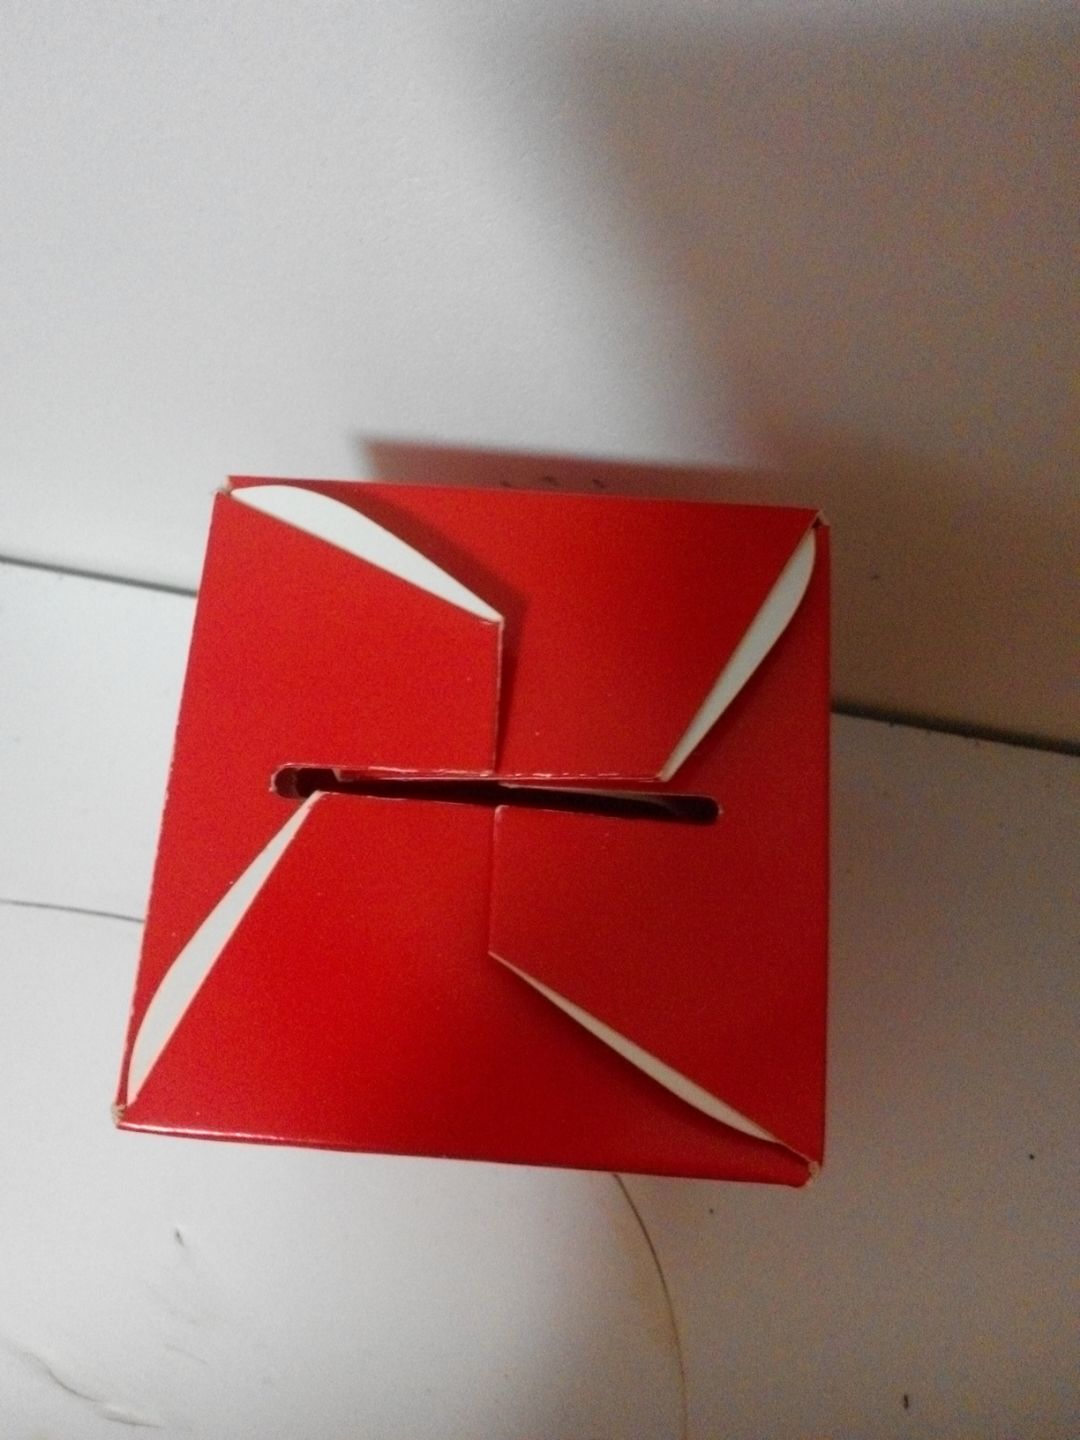 手工折纸糖果盒的折法图解教程（简单折纸小白兔步骤图解说明） - 有点网 - 好手艺